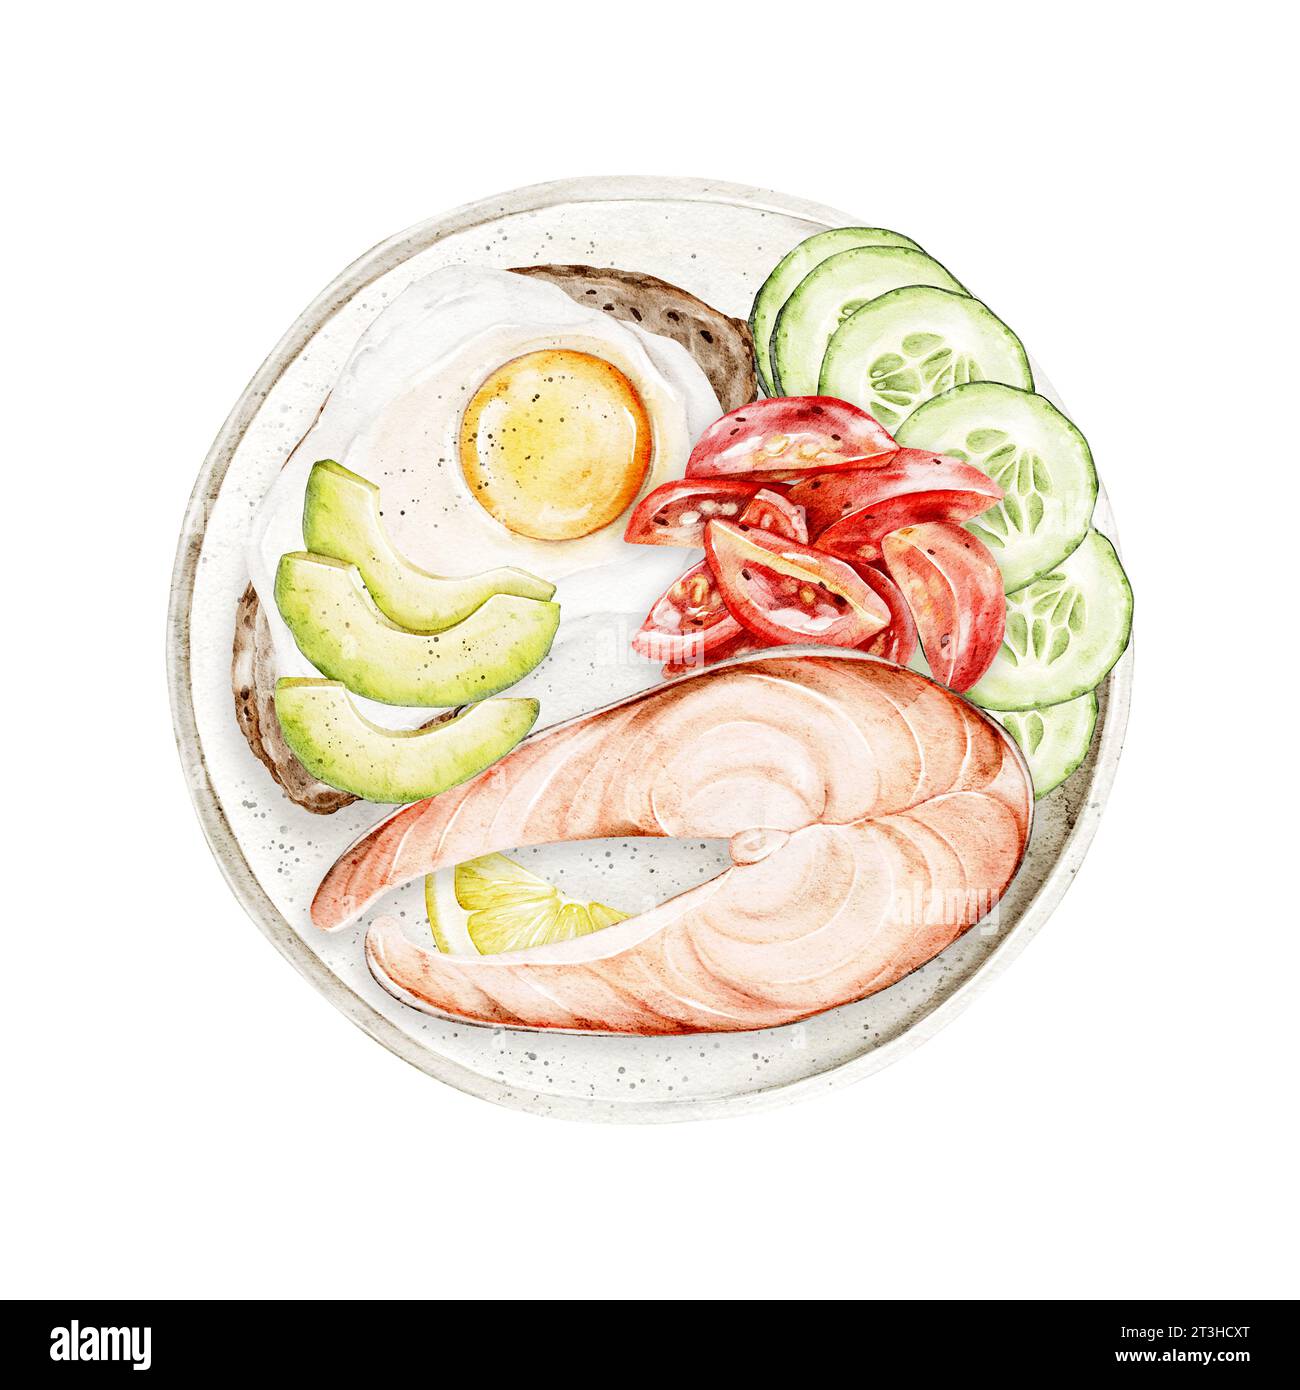 Saumon cuit à l'aquarelle avec œufs au plat et sandwich à l'avocat, concombres frais et tomates sur une assiette. Illustration dessinée à la main pour le menu du petit déjeuner, coo Banque D'Images